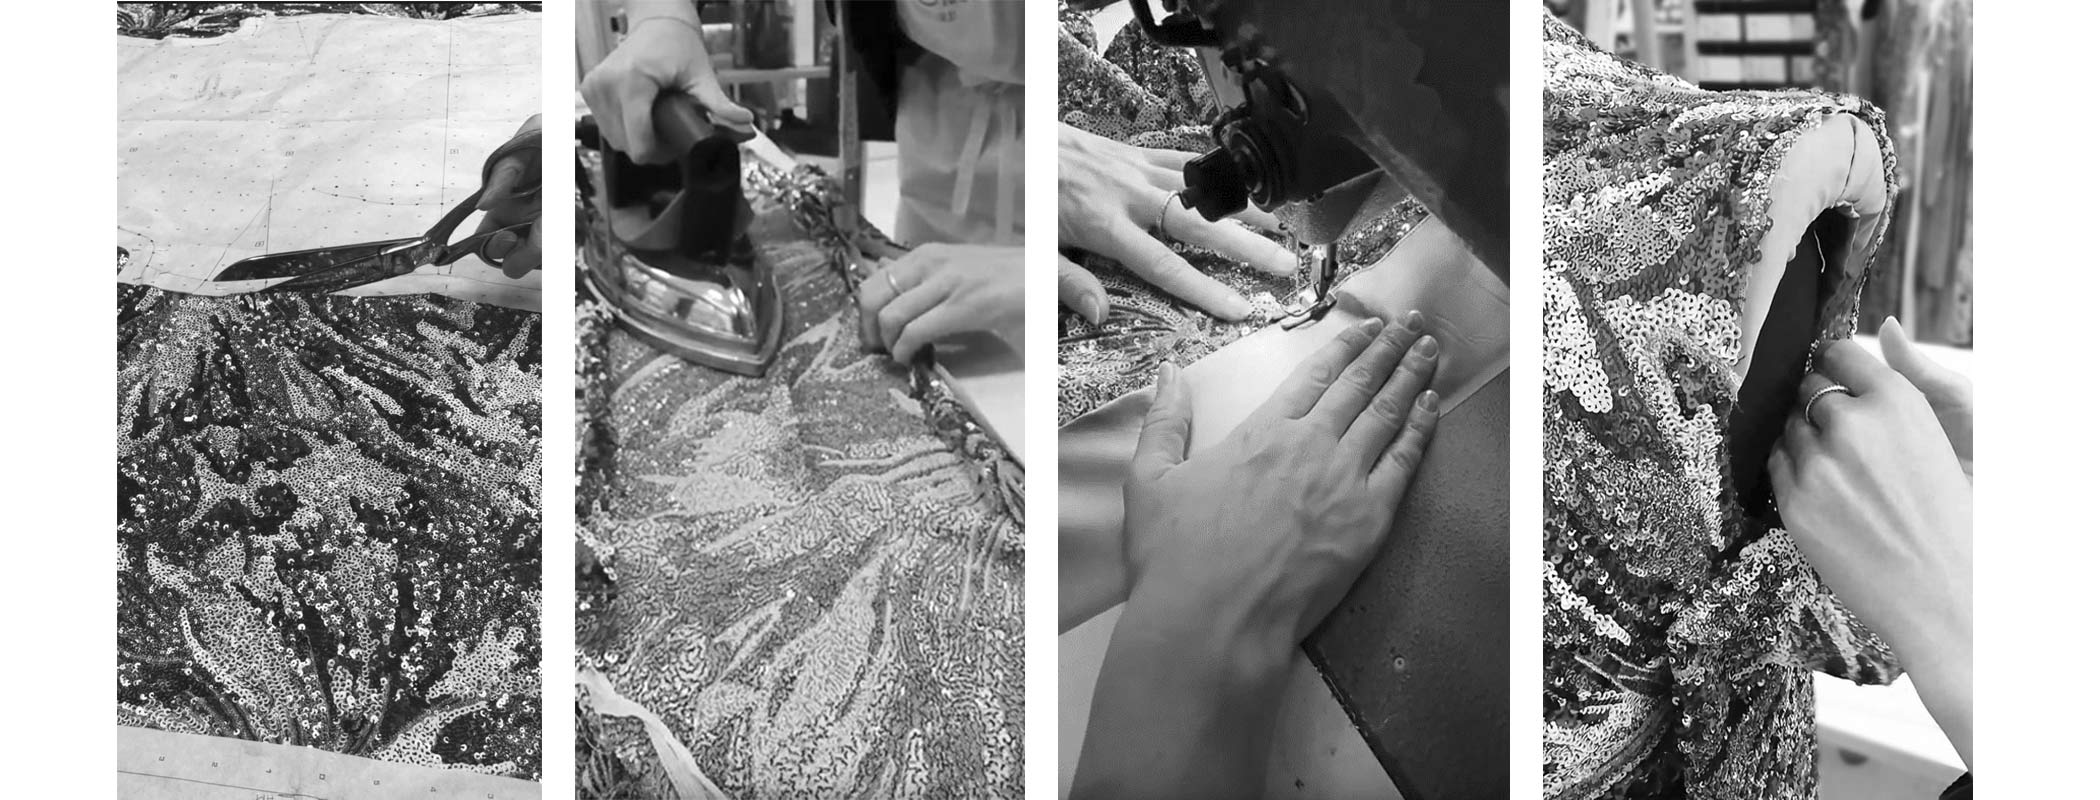 PIO O'KAN Couture Collection Herbst/Winter 2021/22 Making-of Stoff zuschneiden Bügeln Futter einnähen zusammennähen zusammenstecken Ärmel annähen